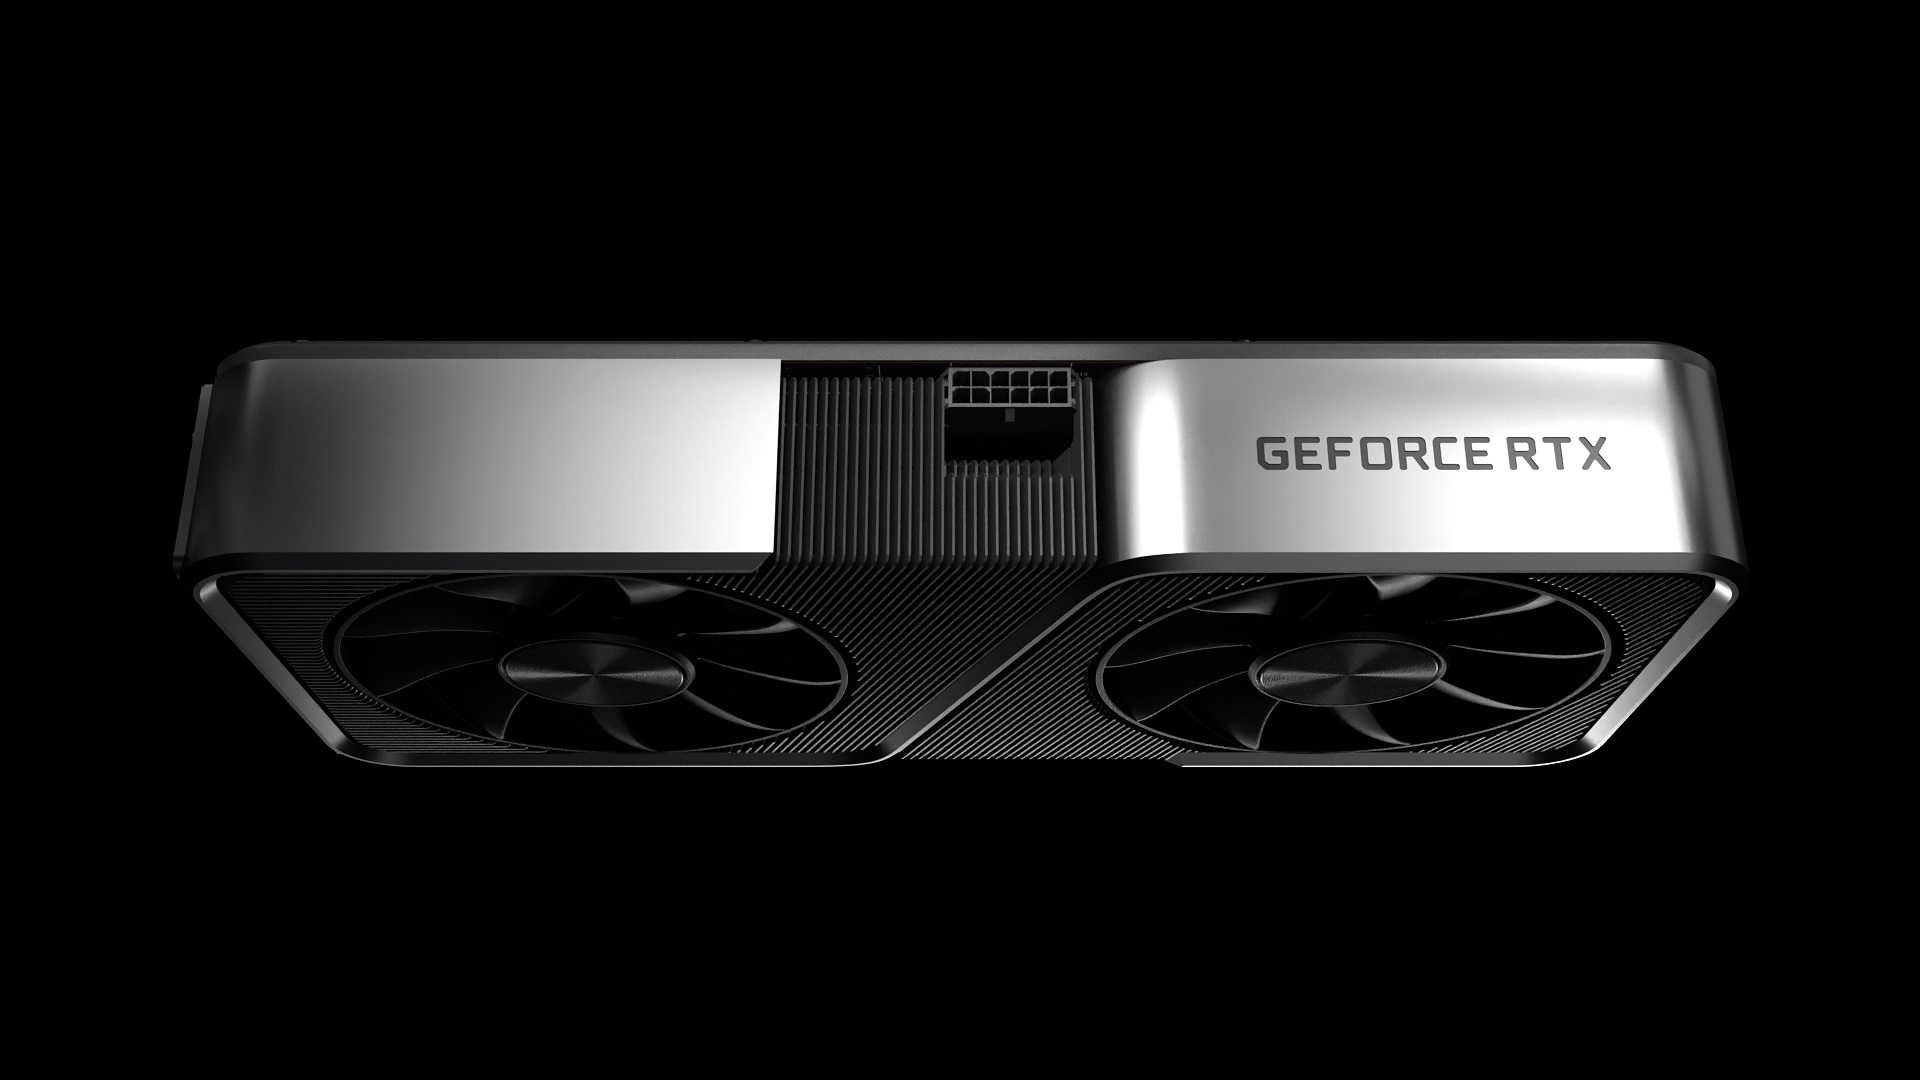 Geforce Rtx 3070 को Nvidia का सस्ता अगली पीढ़ी का GPU विकल्प घोषित किया गया